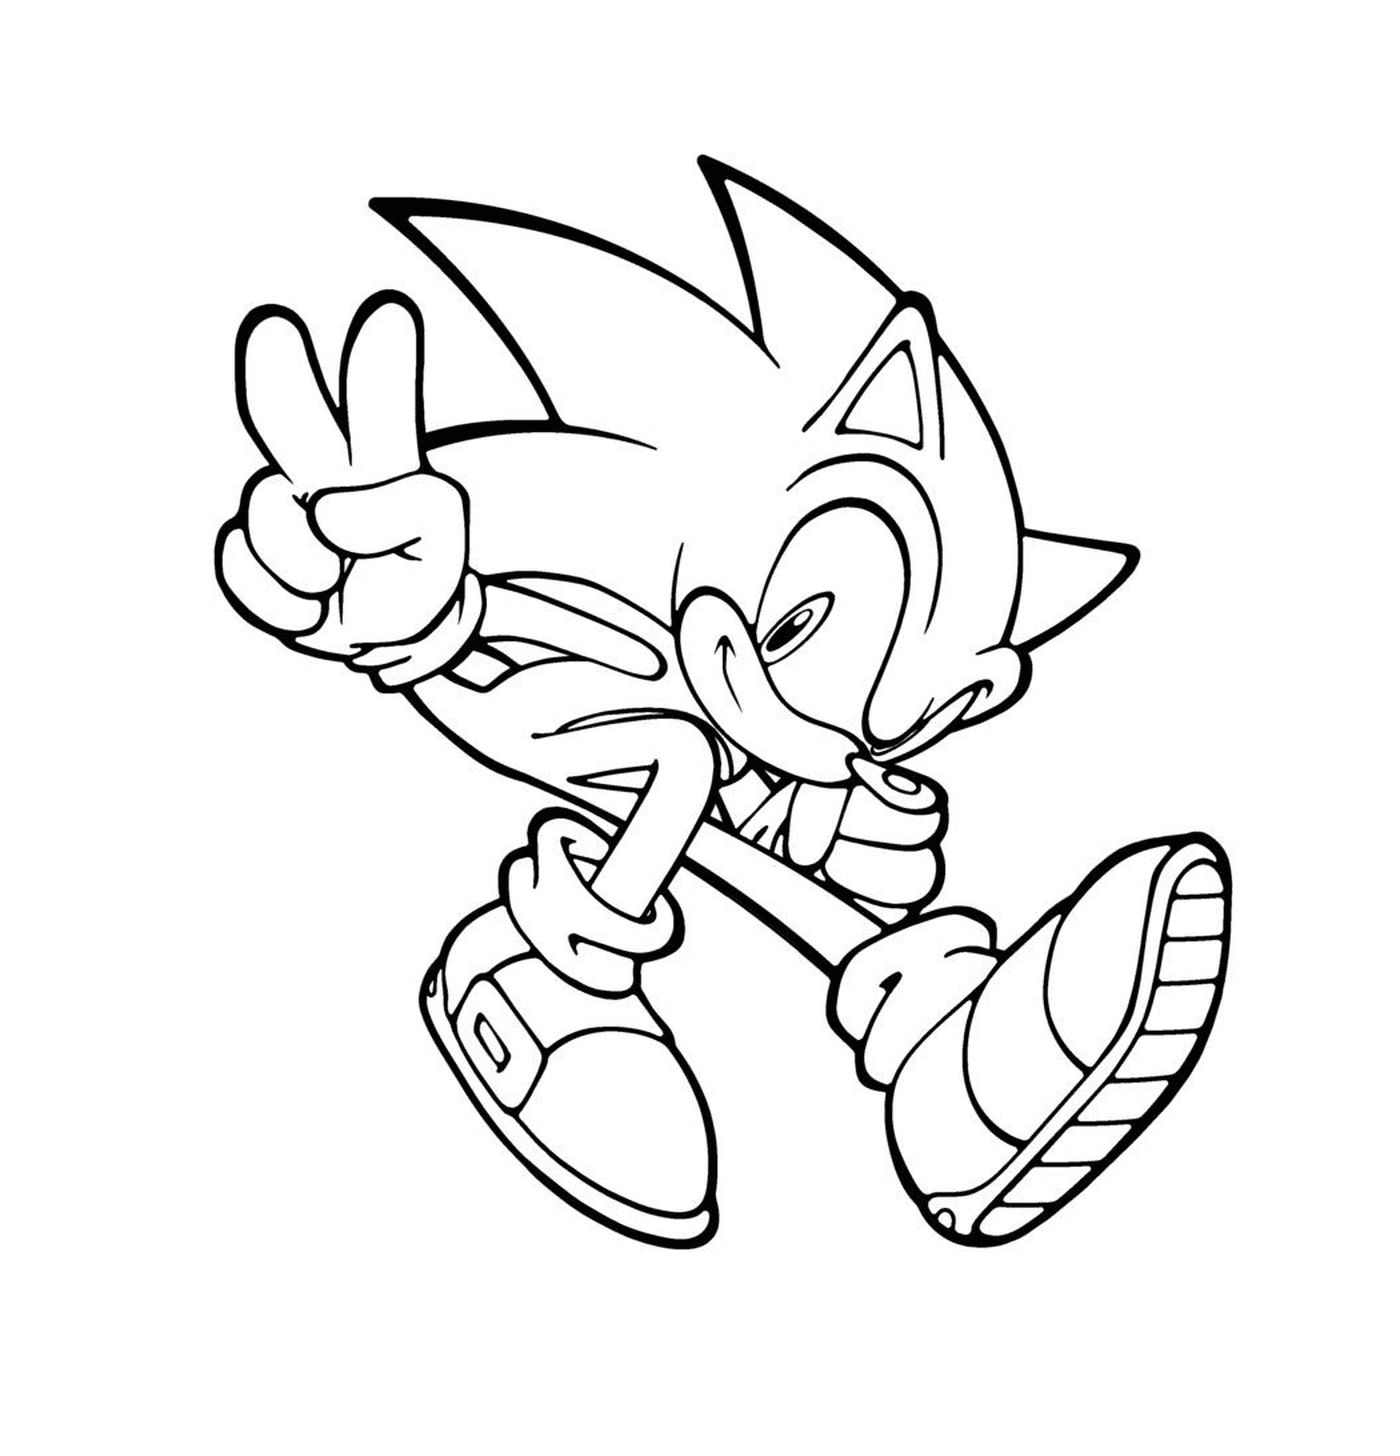  Sonic haciendo una señal de paz 